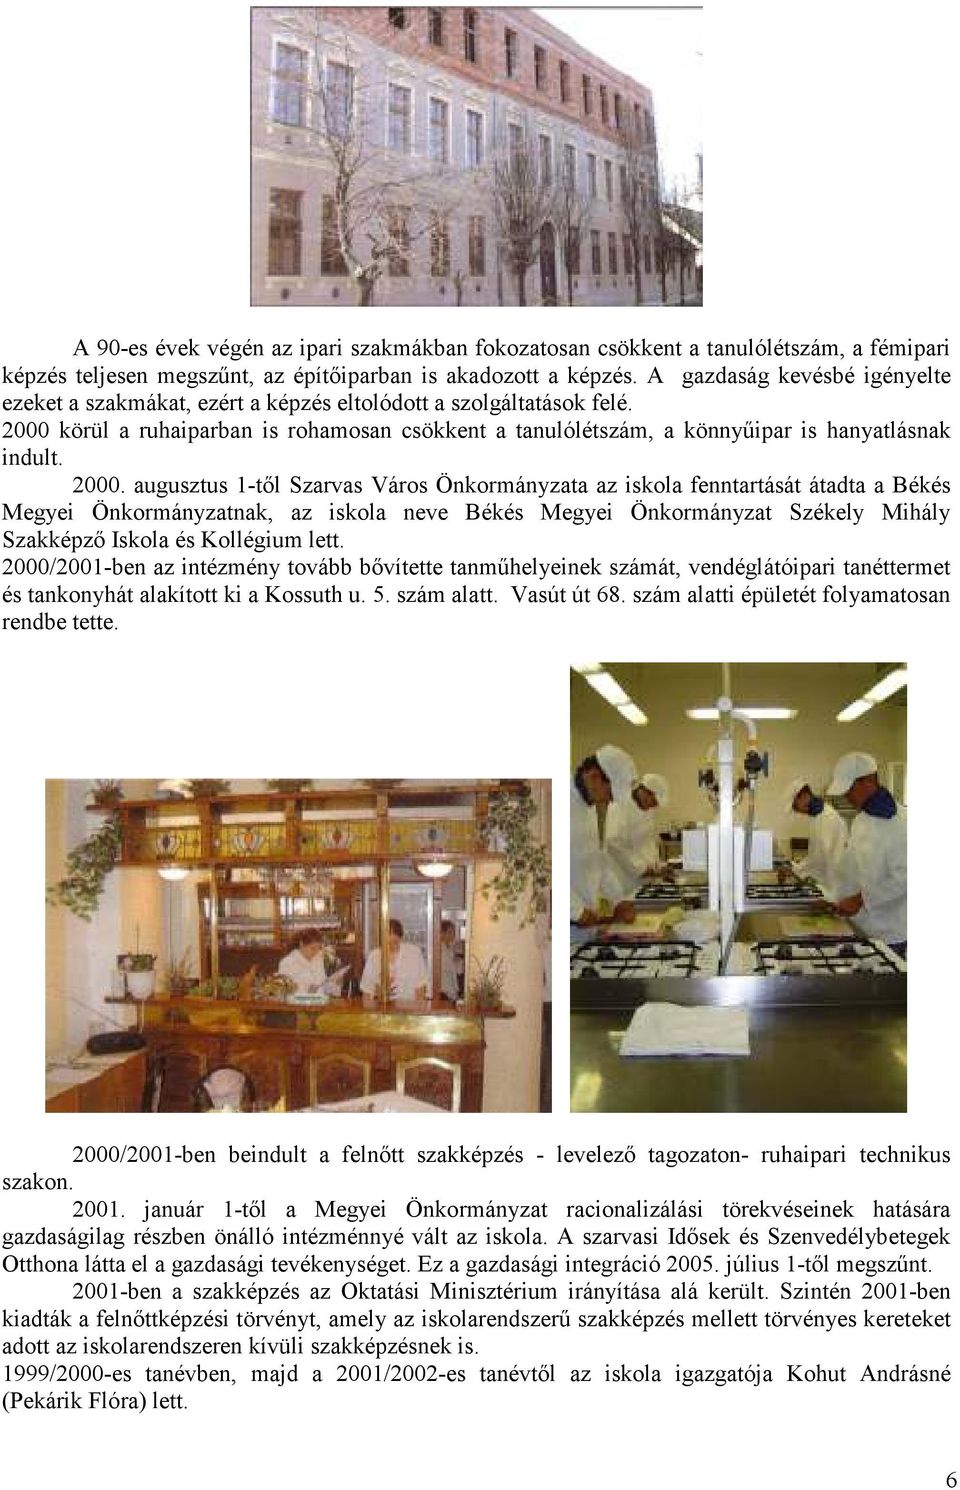 2000. augusztus 1-tıl Szarvas Város Önkormányzata az iskola fenntartását átadta a Békés Megyei Önkormányzatnak, az iskola neve Békés Megyei Önkormányzat Székely Mihály Szakképzı Iskola és Kollégium